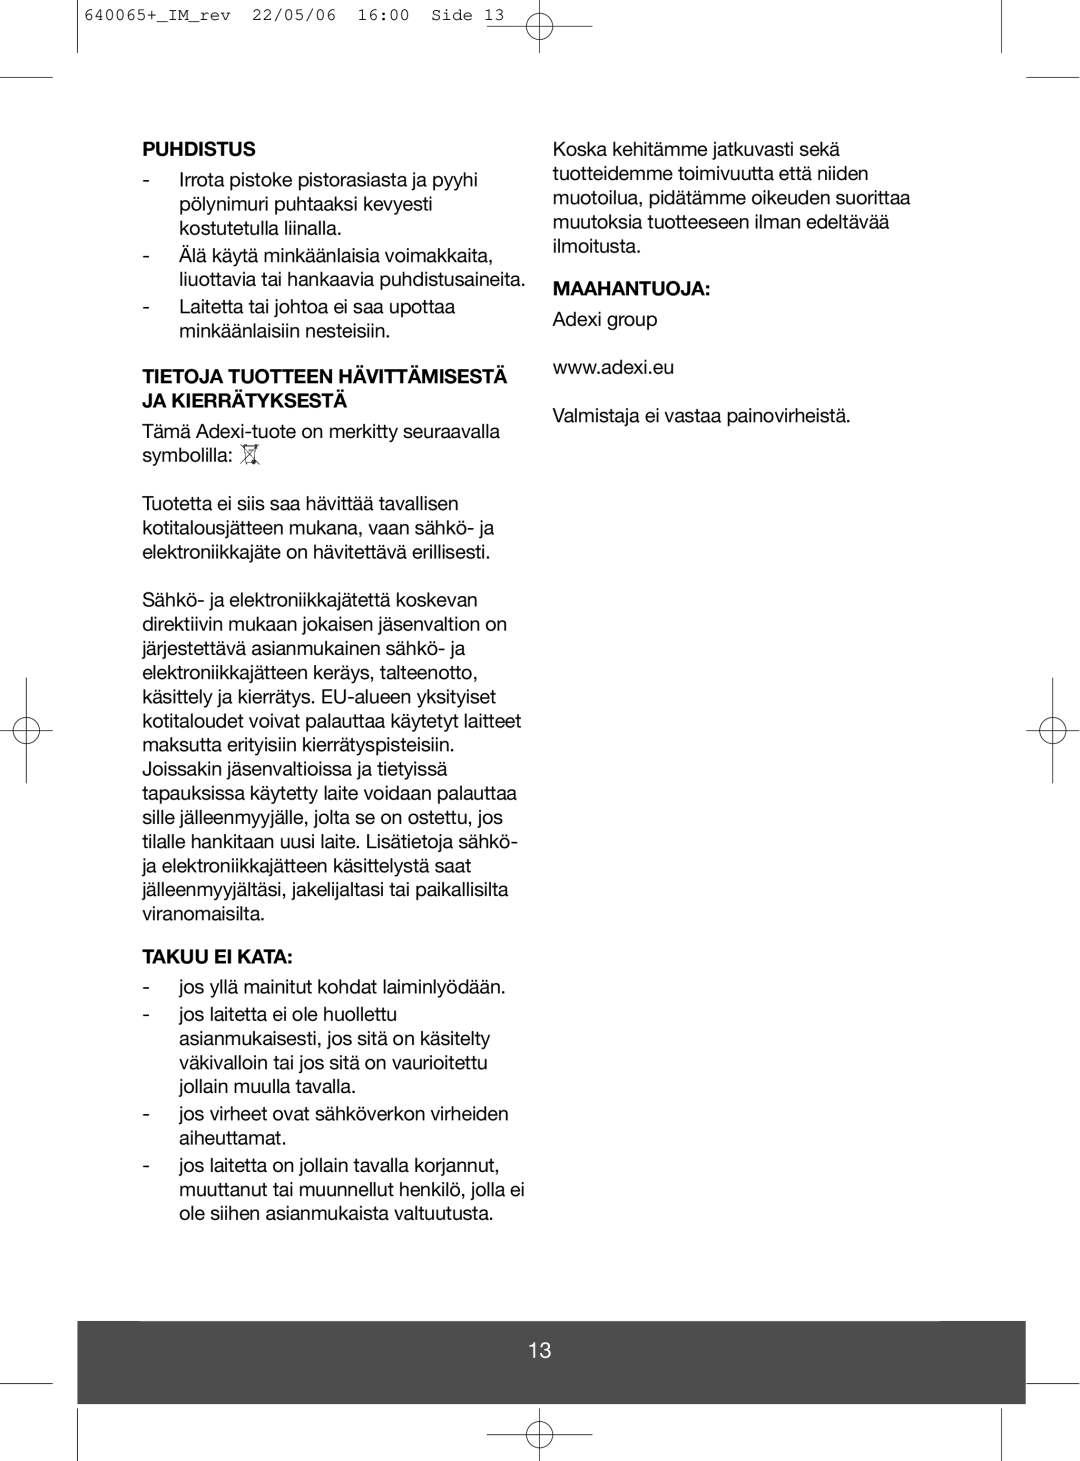 Melissa 640-113/115 manual Puhdistus, Tietoja Tuotteen Hävittämisestä Ja Kierrätyksestä, Takuu Ei Kata, Maahantuoja 